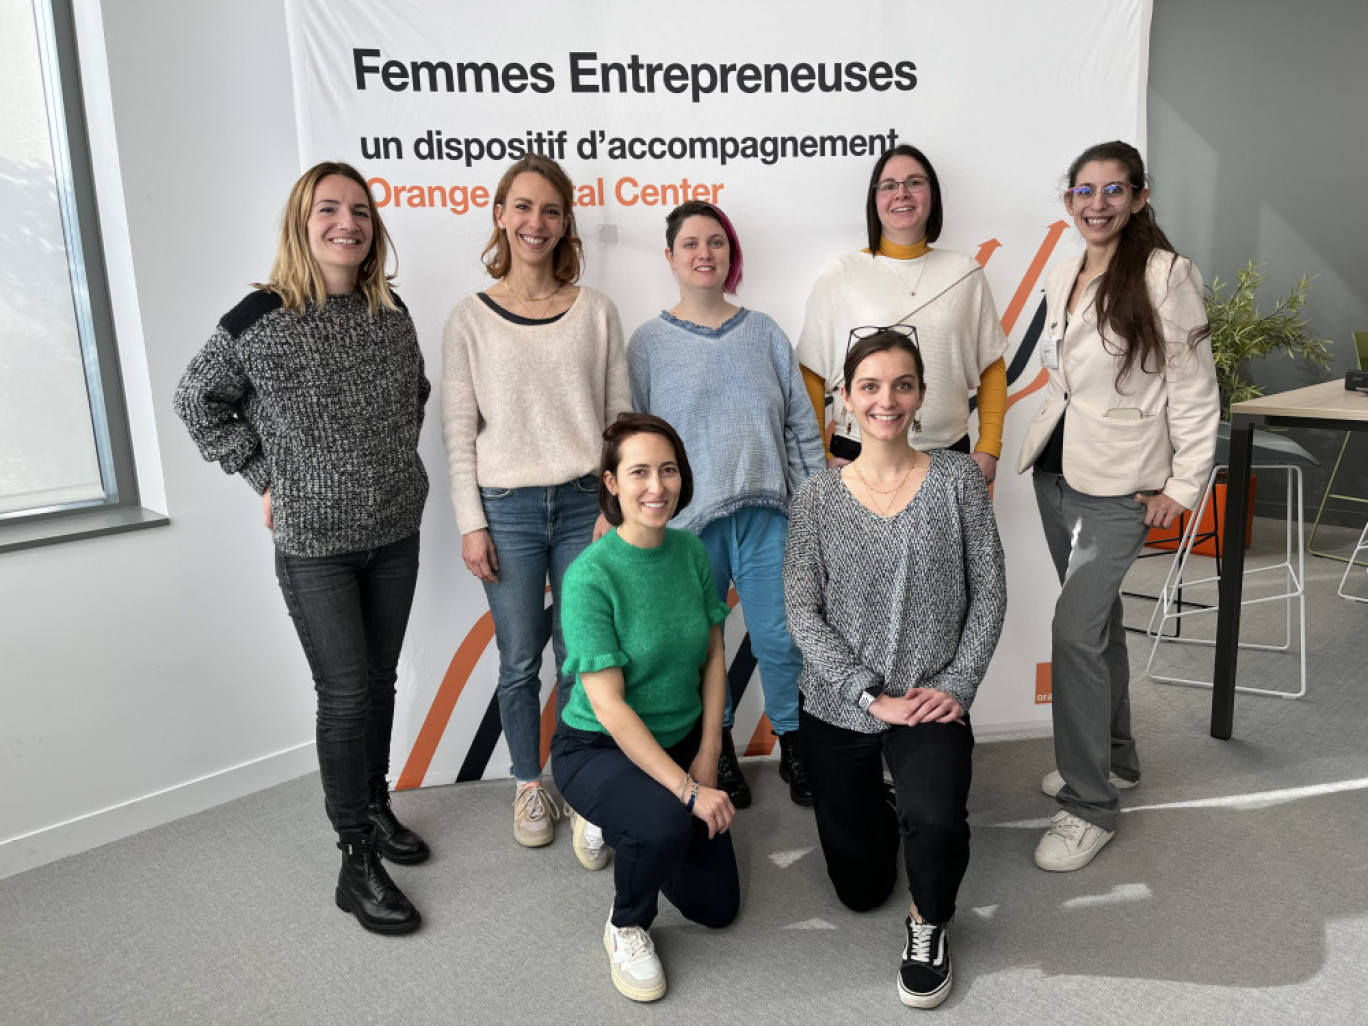 Aujourd'hui, les femmes ne représentent que 9% des entrepreneurs dans le domaine du numérique en France et 8% des levées de fonds nationales.